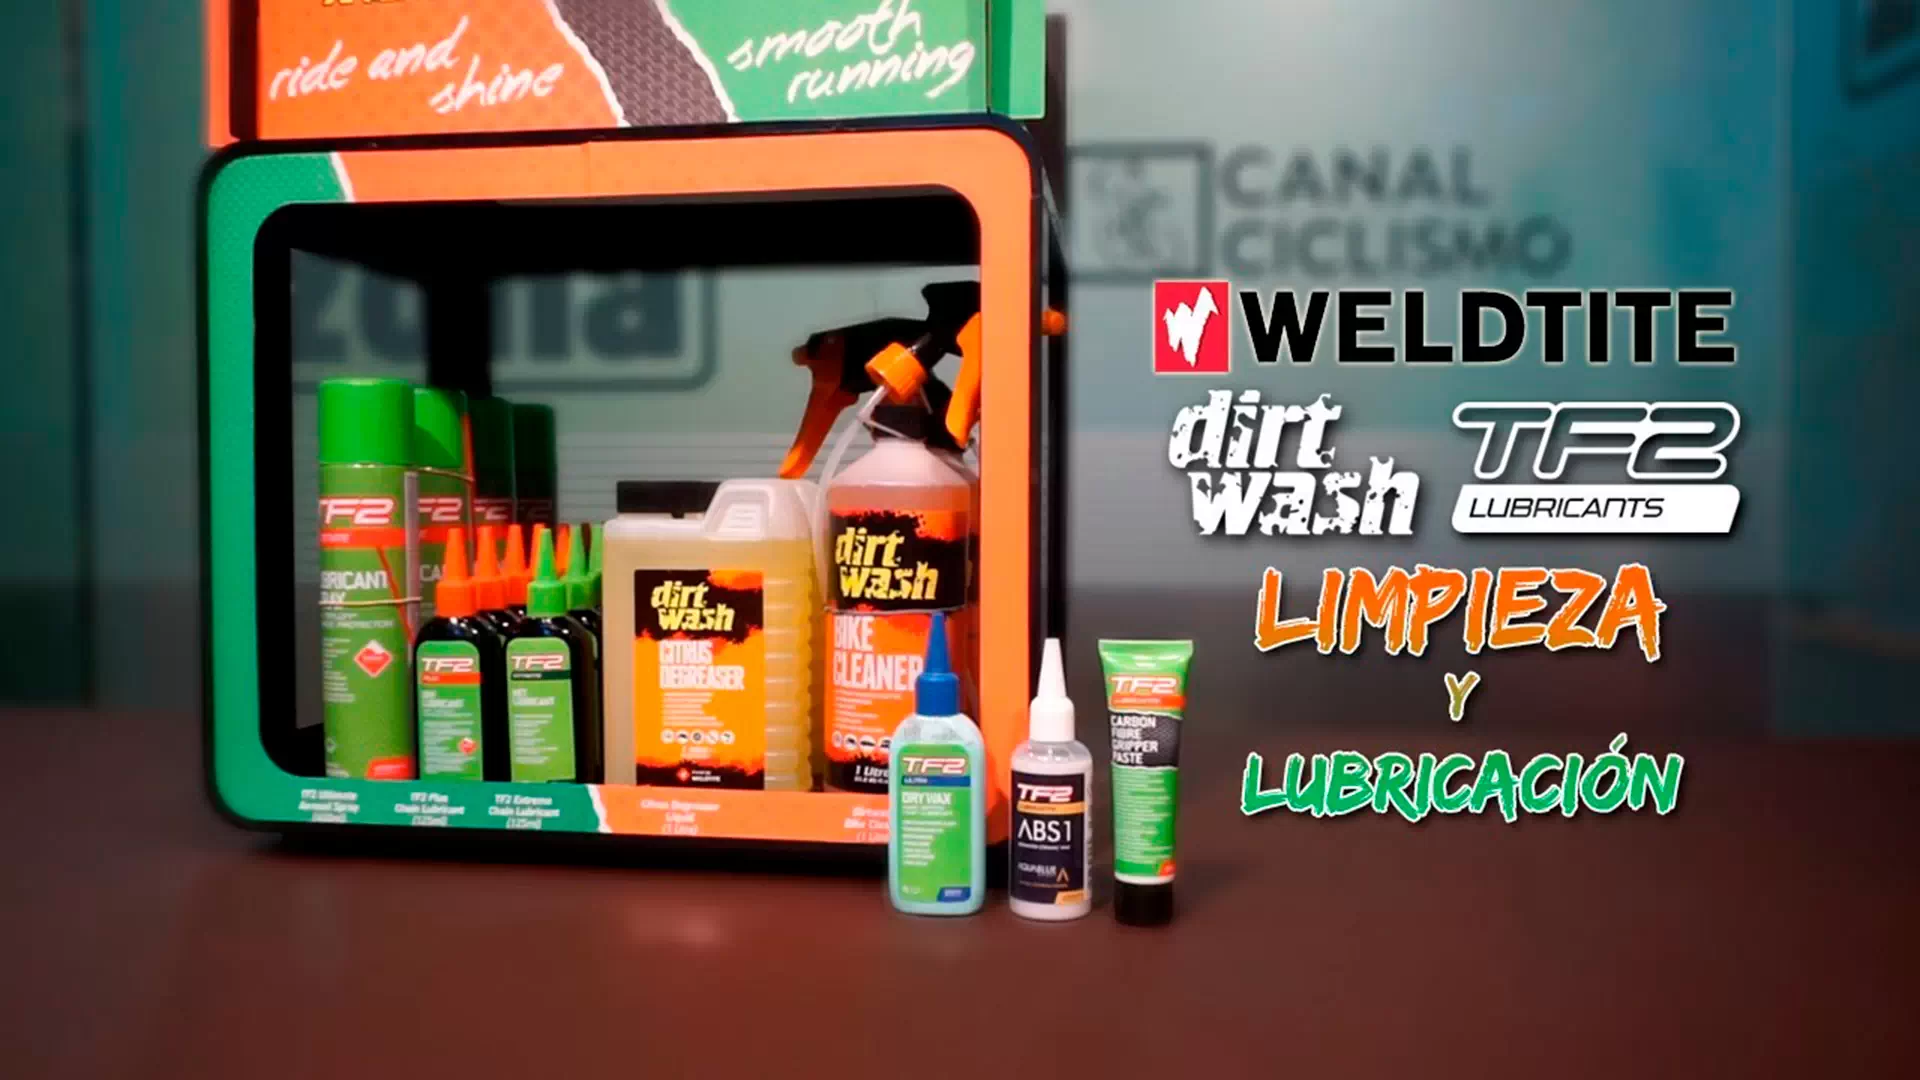 Limpieza y lubricación con Weldtite, Dirtwash y TF2